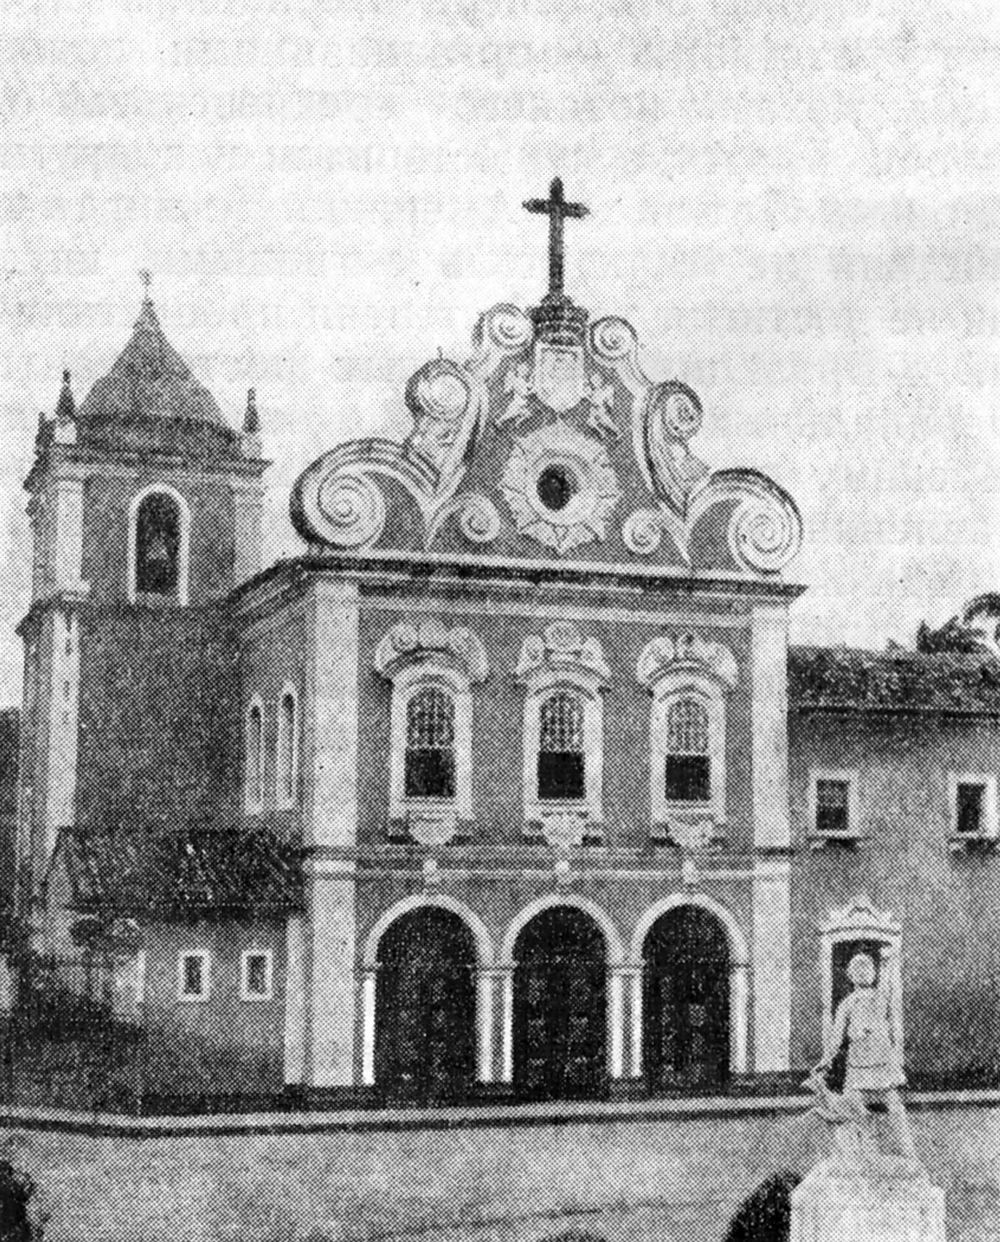 54. Пенедо. Церковь Санта Мариа дос Анкос во францисканском монастыре, 1759 г.